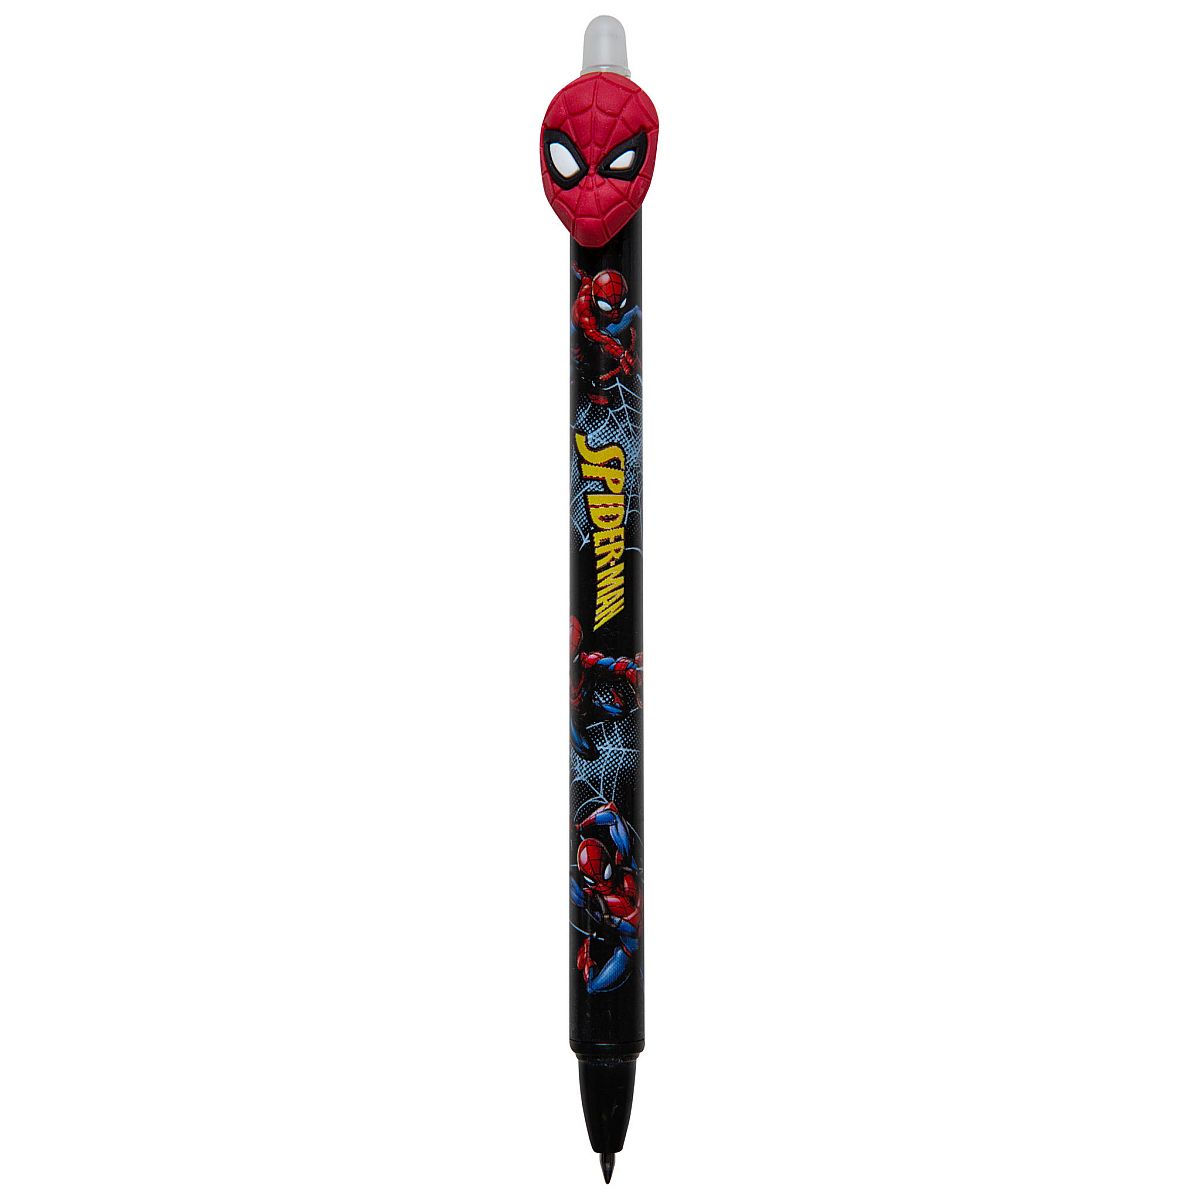 Długopis Patio AUTOMATYCZNY Avengers niebieski 0,5mm (57905PTR)